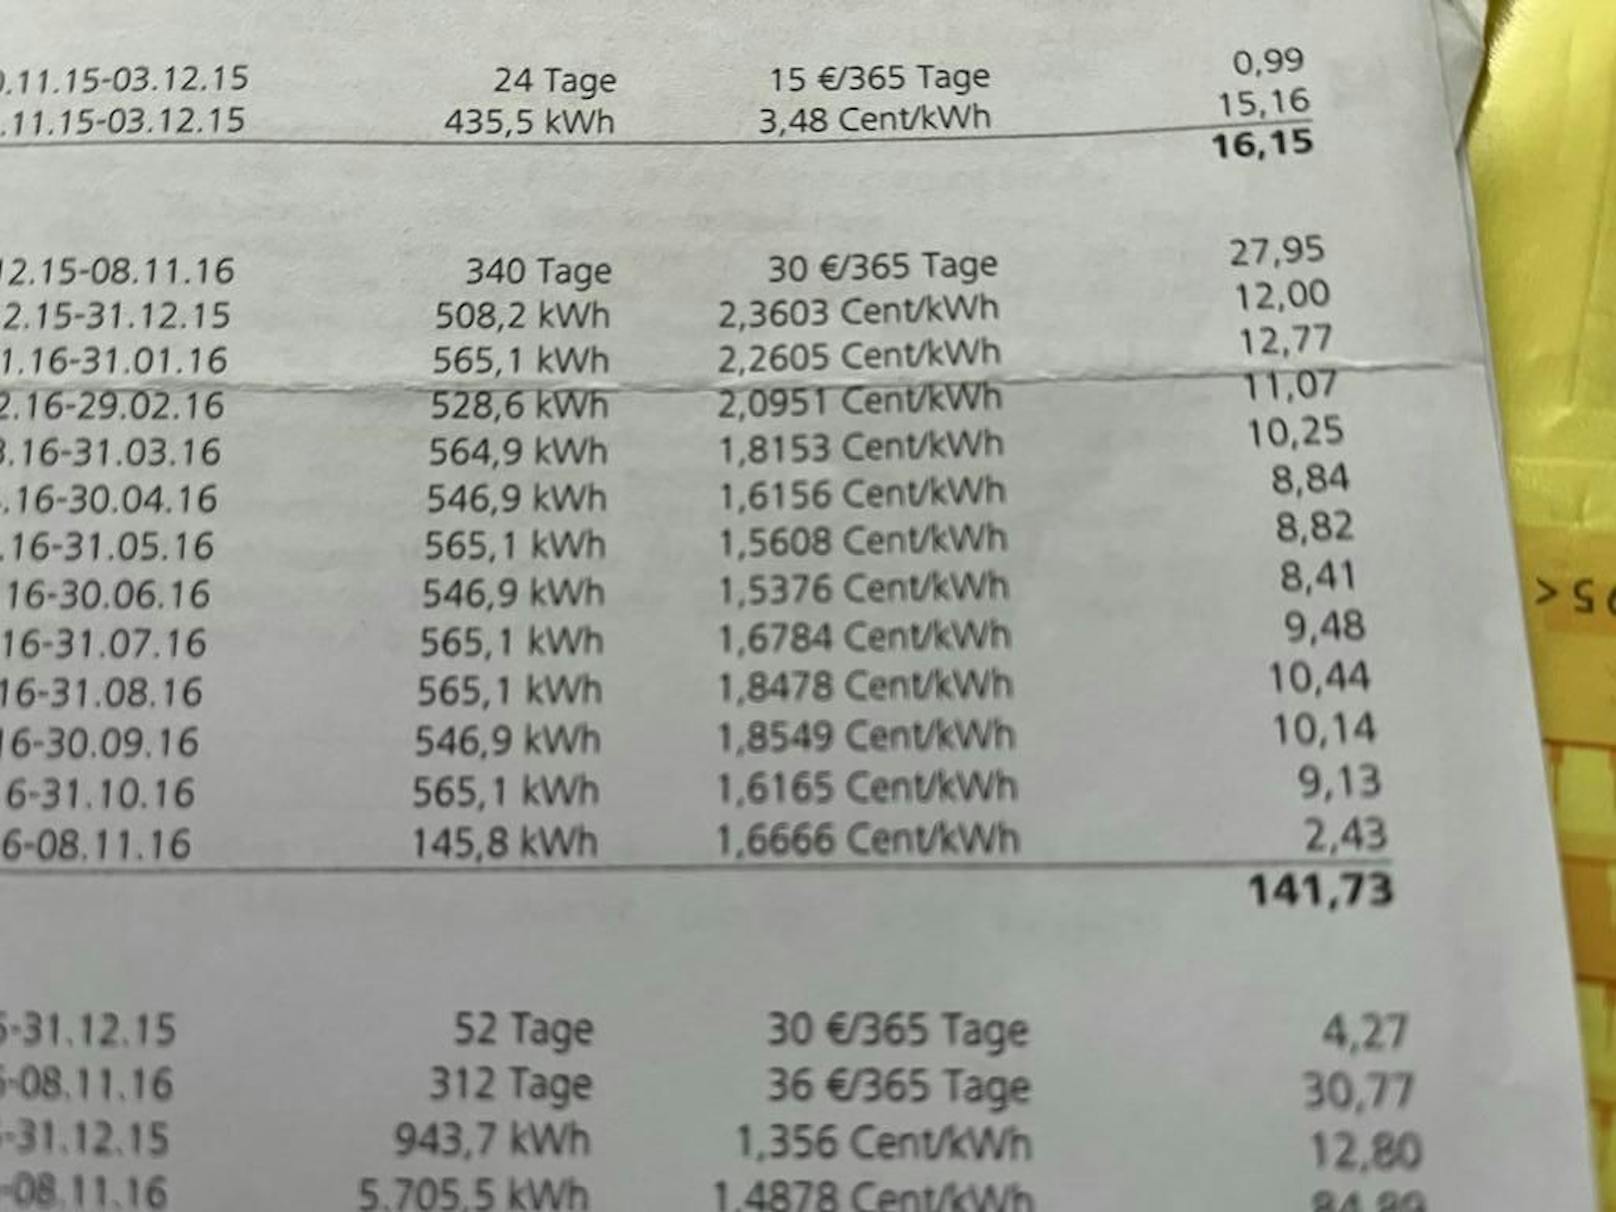 Damals kostete eine kWh Gast zwischen 1,5 und 2,4 Cent (Float-Tarif). Heute zahlt der 40-Jährige 15 Cent pro kWh Gas.